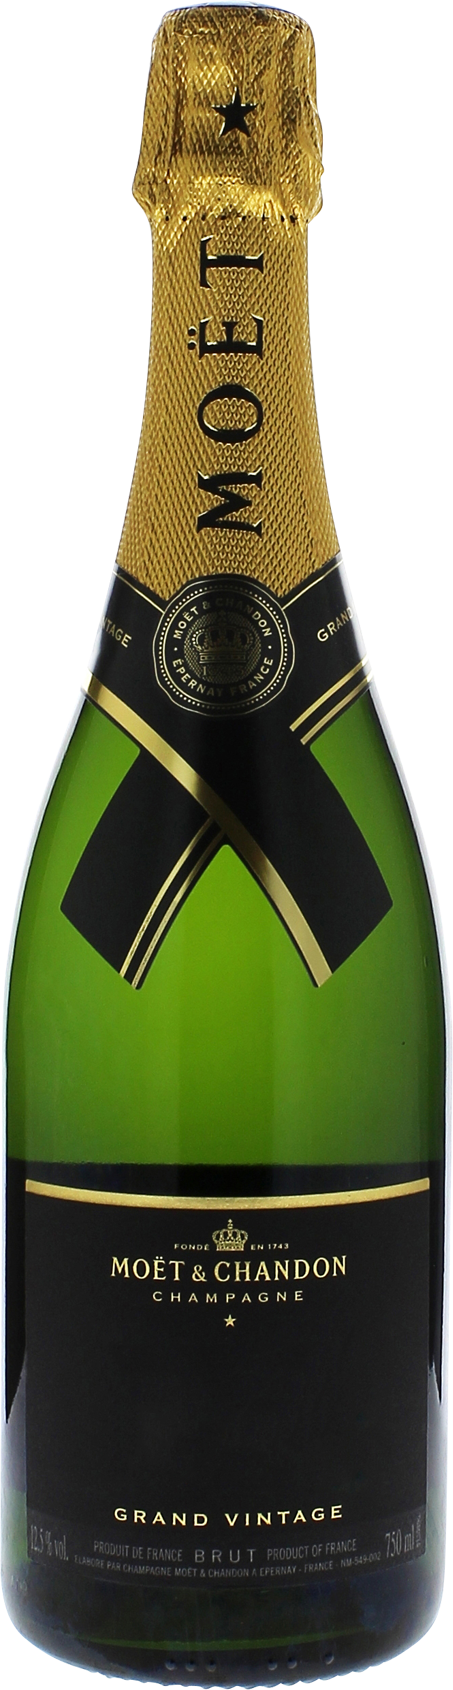 Mot et chandon grand vintage 2015  Moet et chandon, Champagne